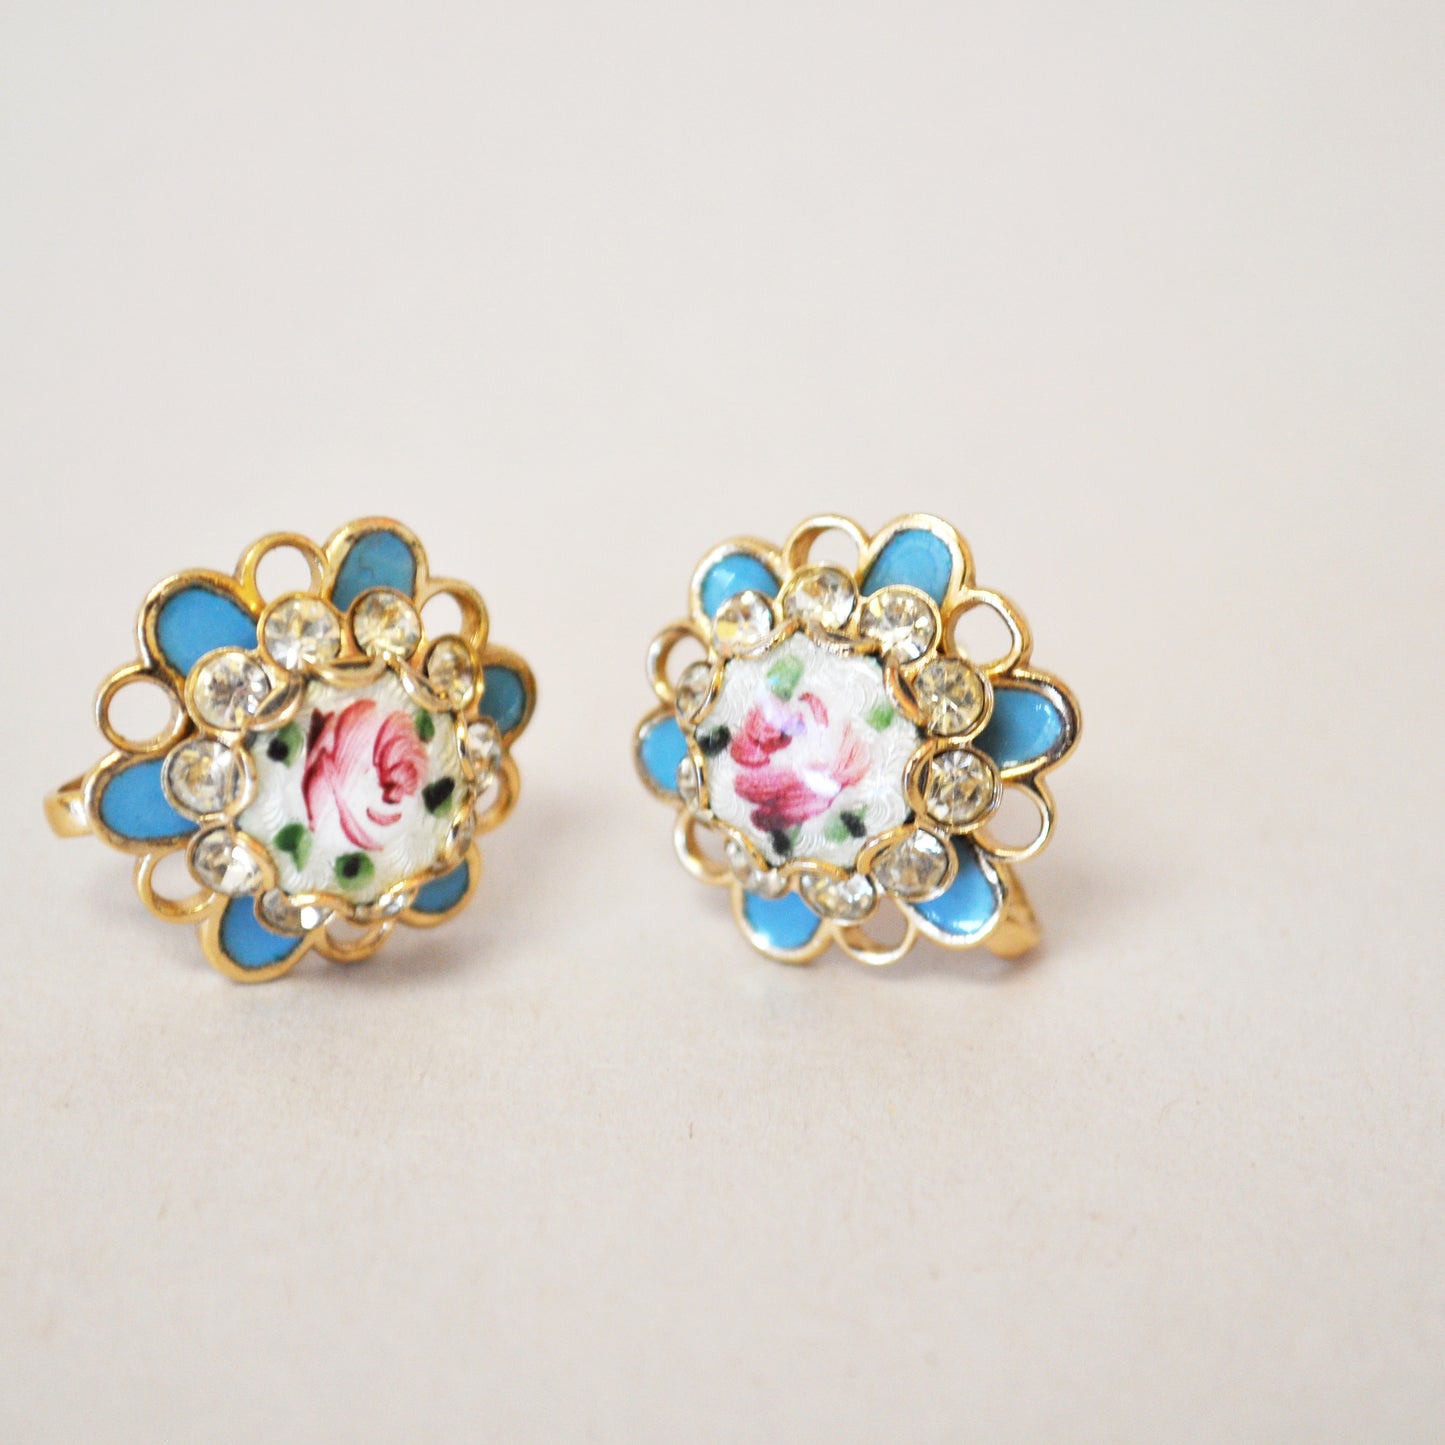 Vintage Rose and Rhinestone Earrings